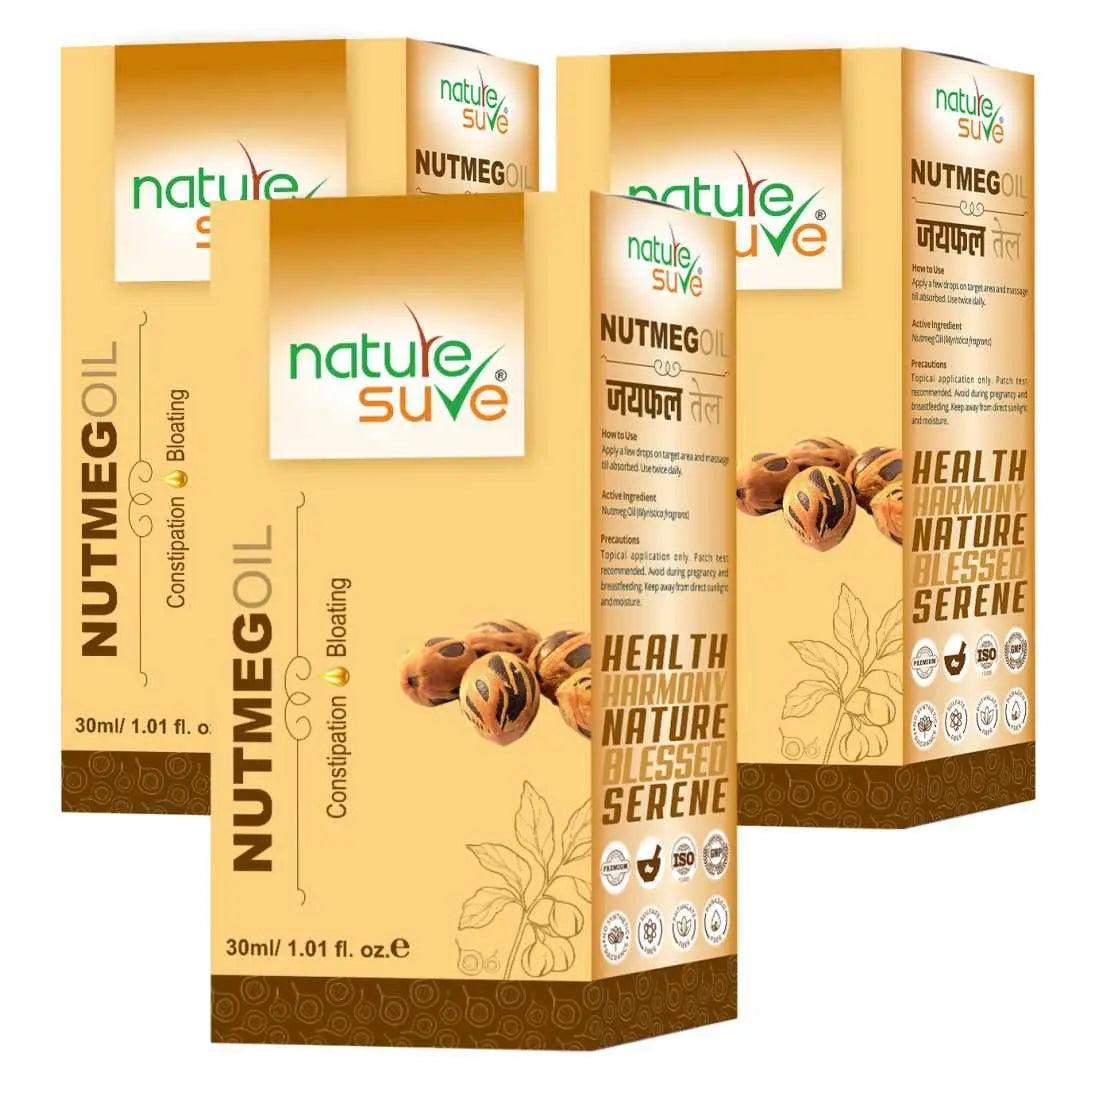 Nature Sure Nutmeg Jaiphal Oil for Bloating & Constipation in Men & Women - 30ml 7419870379070